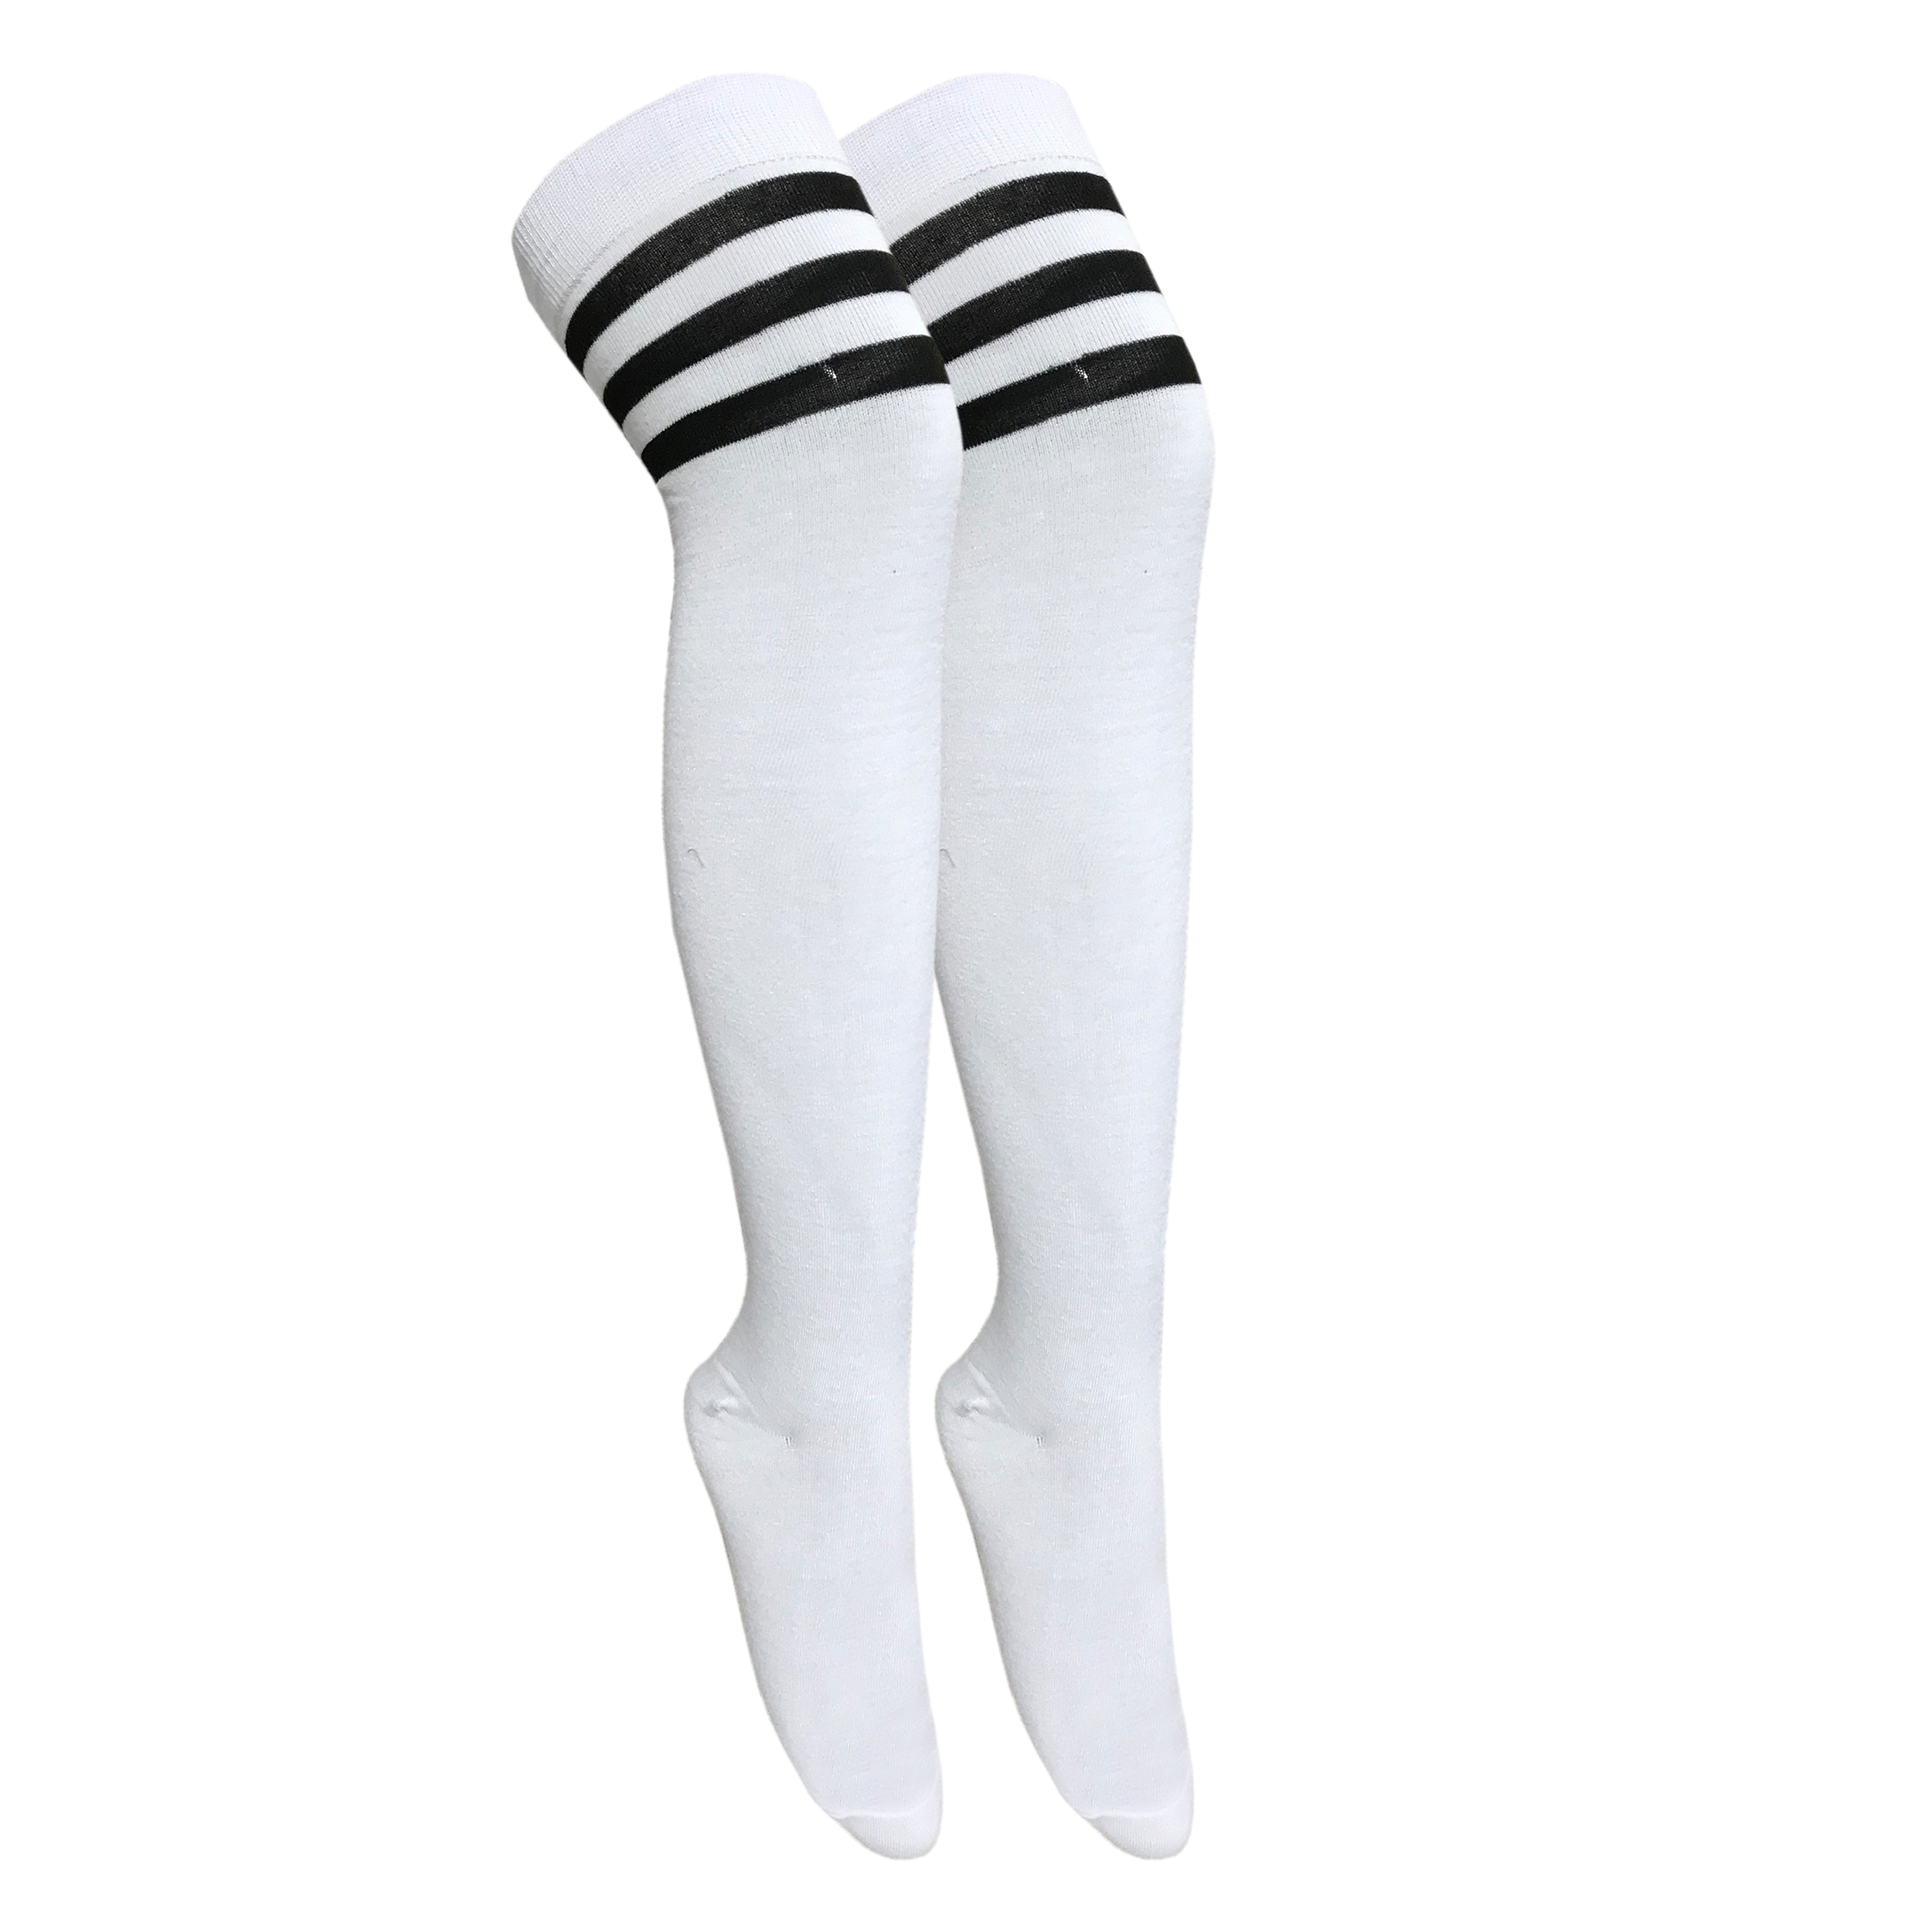 جوراب ساق بلند زنانه تن پوش هنگامه مدل بالا زانو رینگی مجموعه 2 عددی  -  - 5